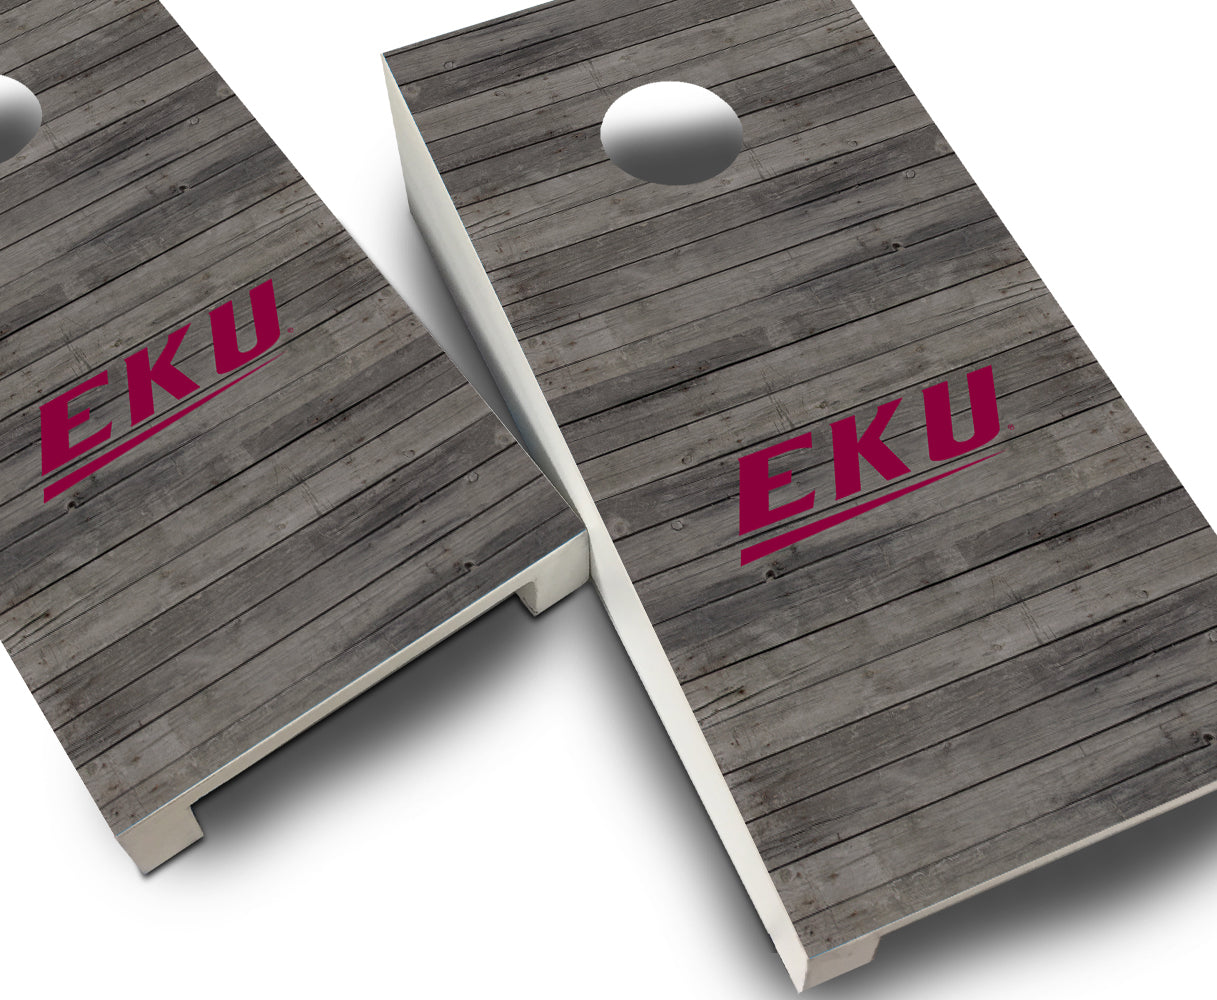 "Eastern Kentucky Distressed" Tabletop Cornhole Boards